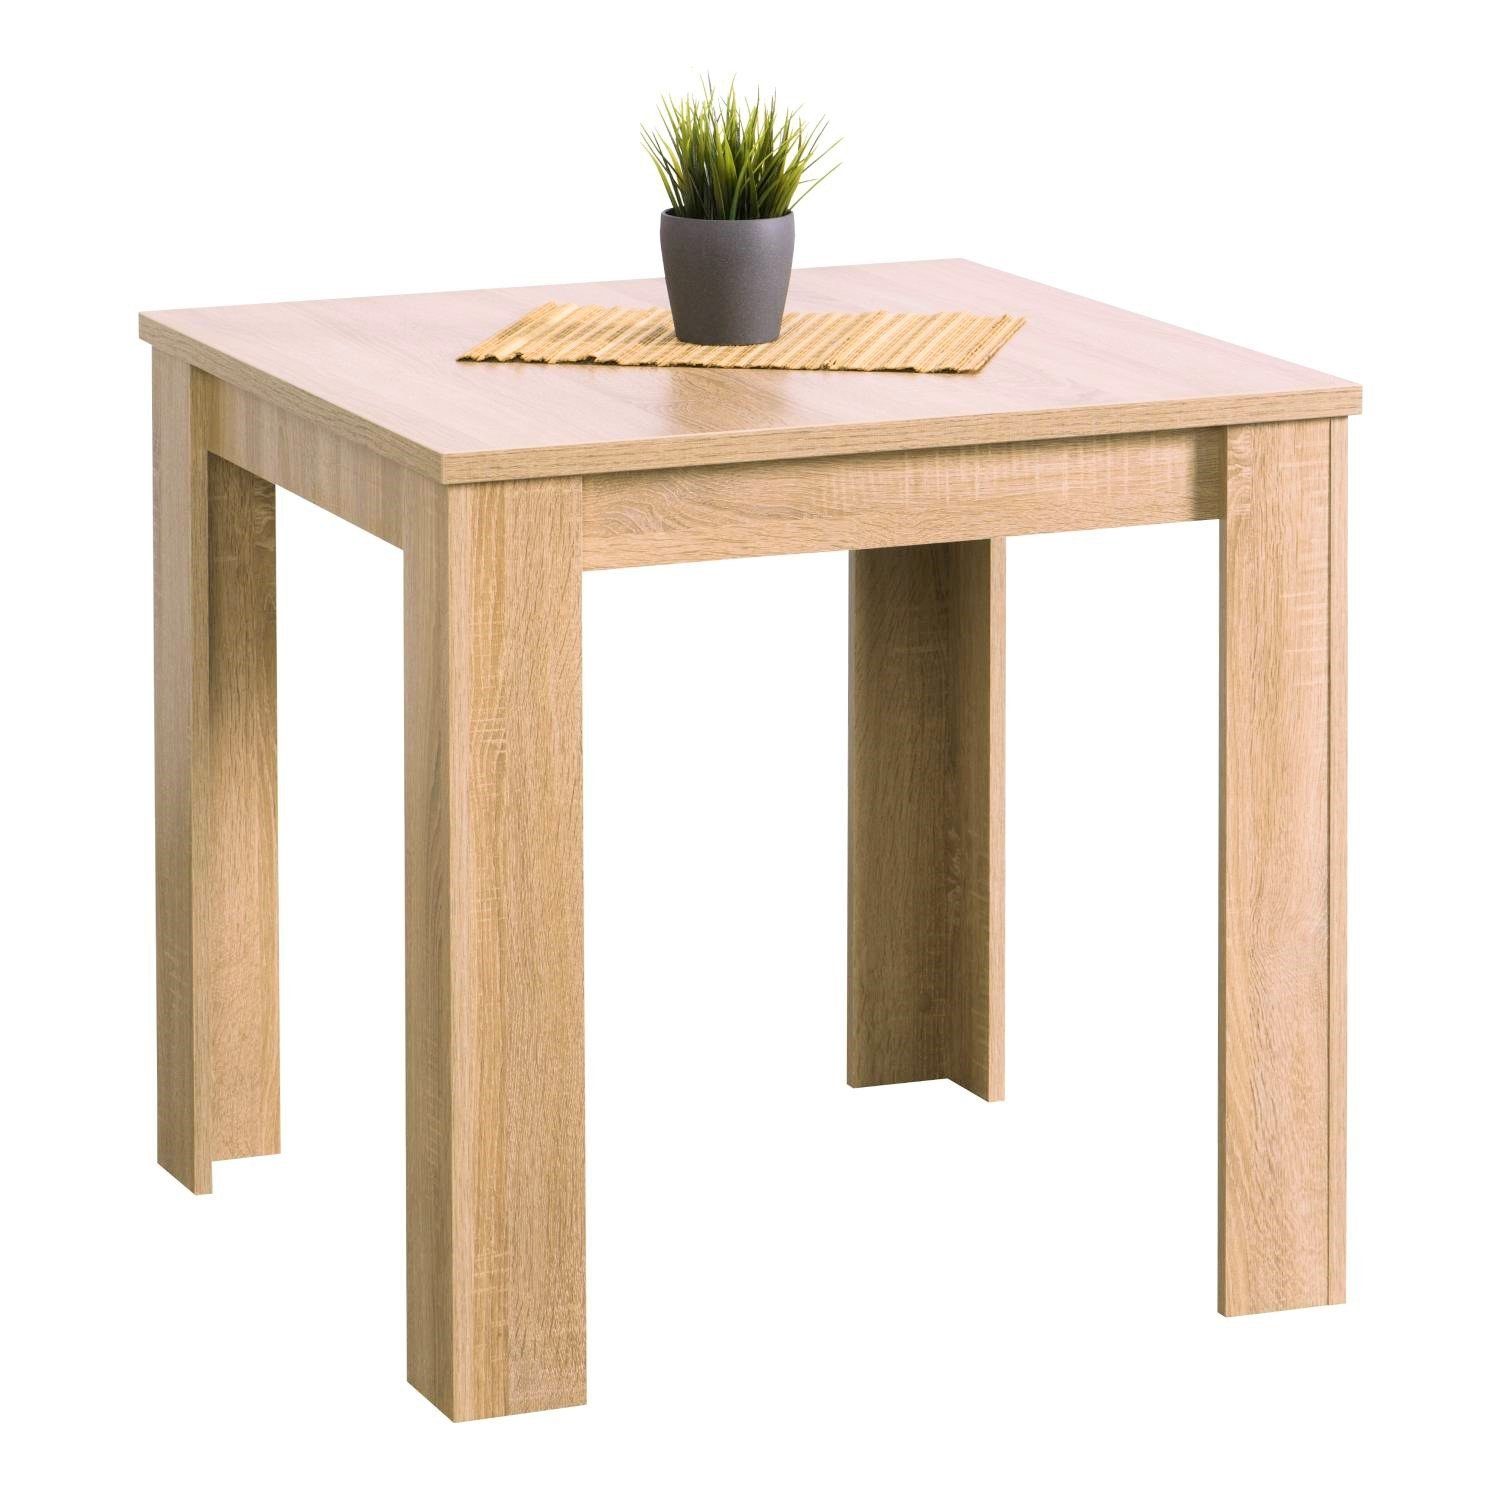 Homestyle4u Esstisch Esszimmertisch Holztisch Küchentisch 80x80 Holz Massiv Weiß oder Eiche